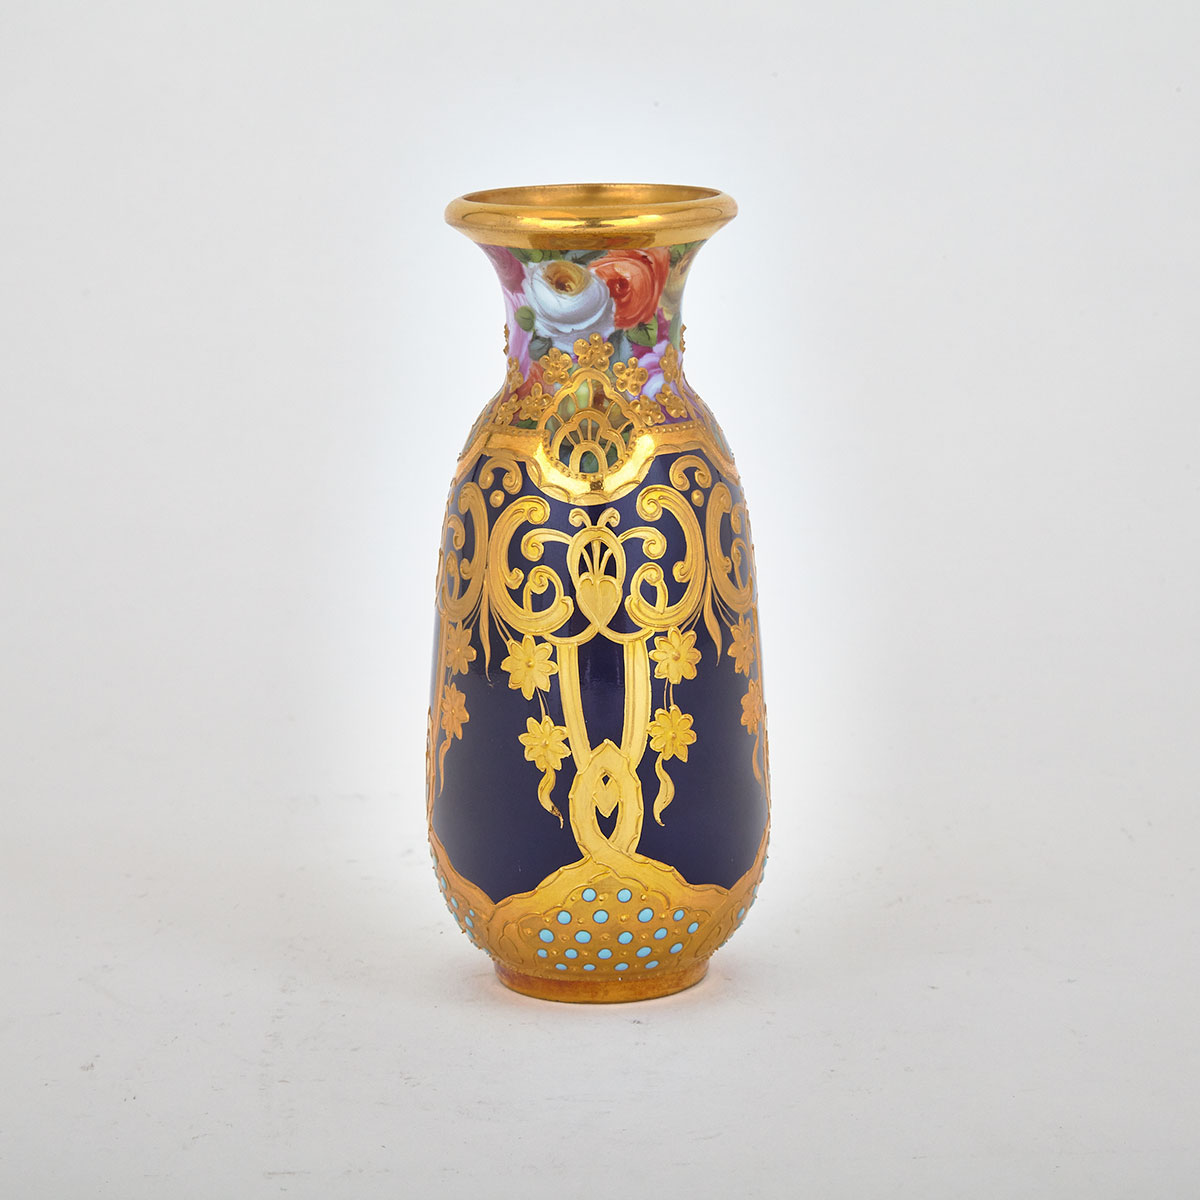 ‘Vienna’ Cabinet Vase, c.1900